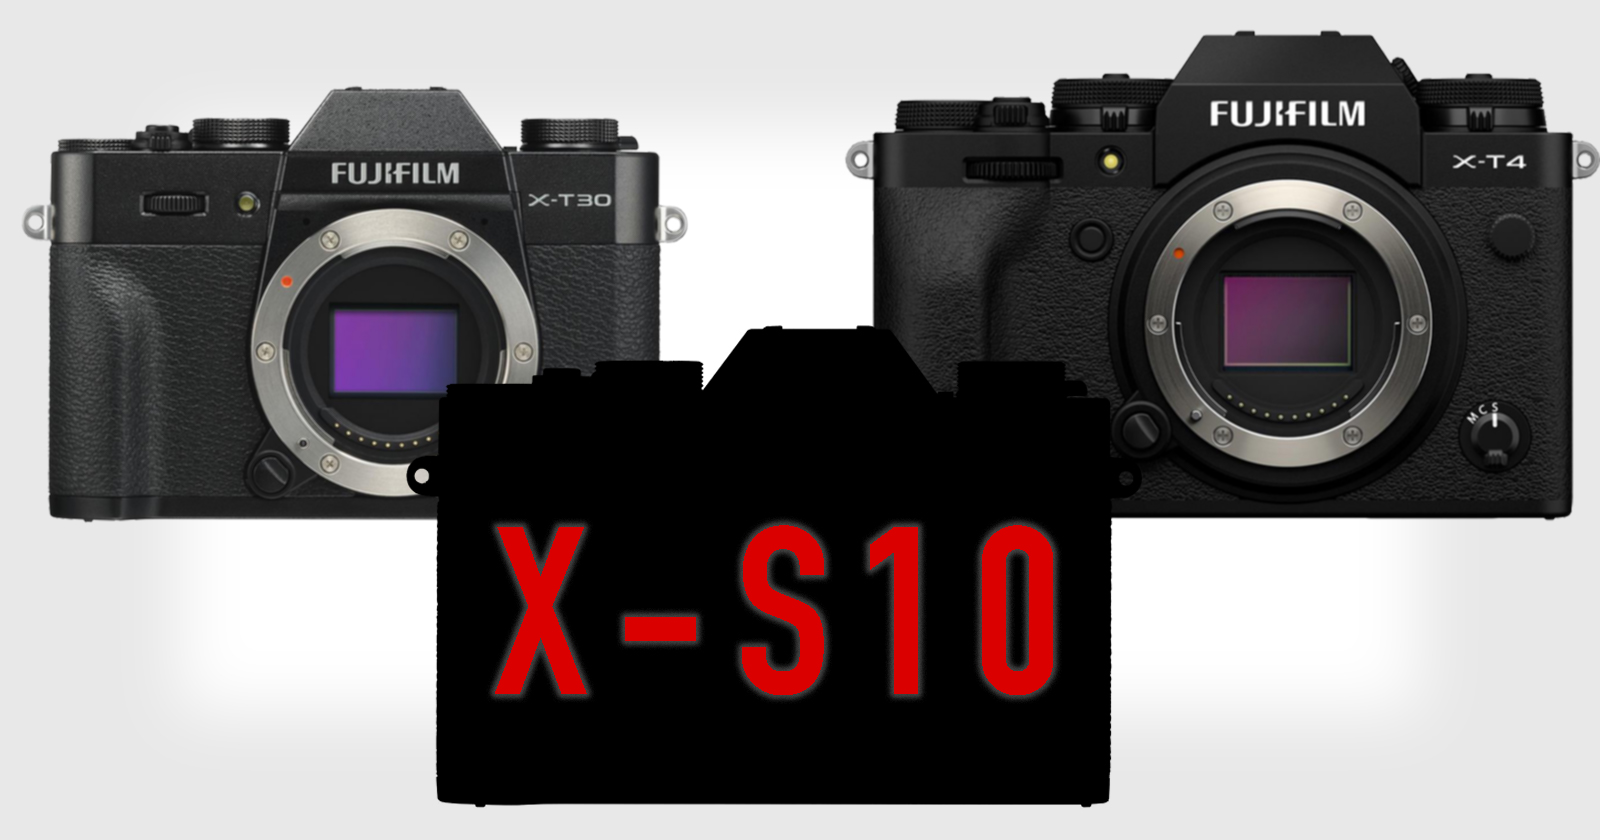 Ảnh chính thức Fujifilm X-S10 xuất hiện và tin đồn cho biết máy sẽ có cảm biến 26MP cùng hệ thống IBIS